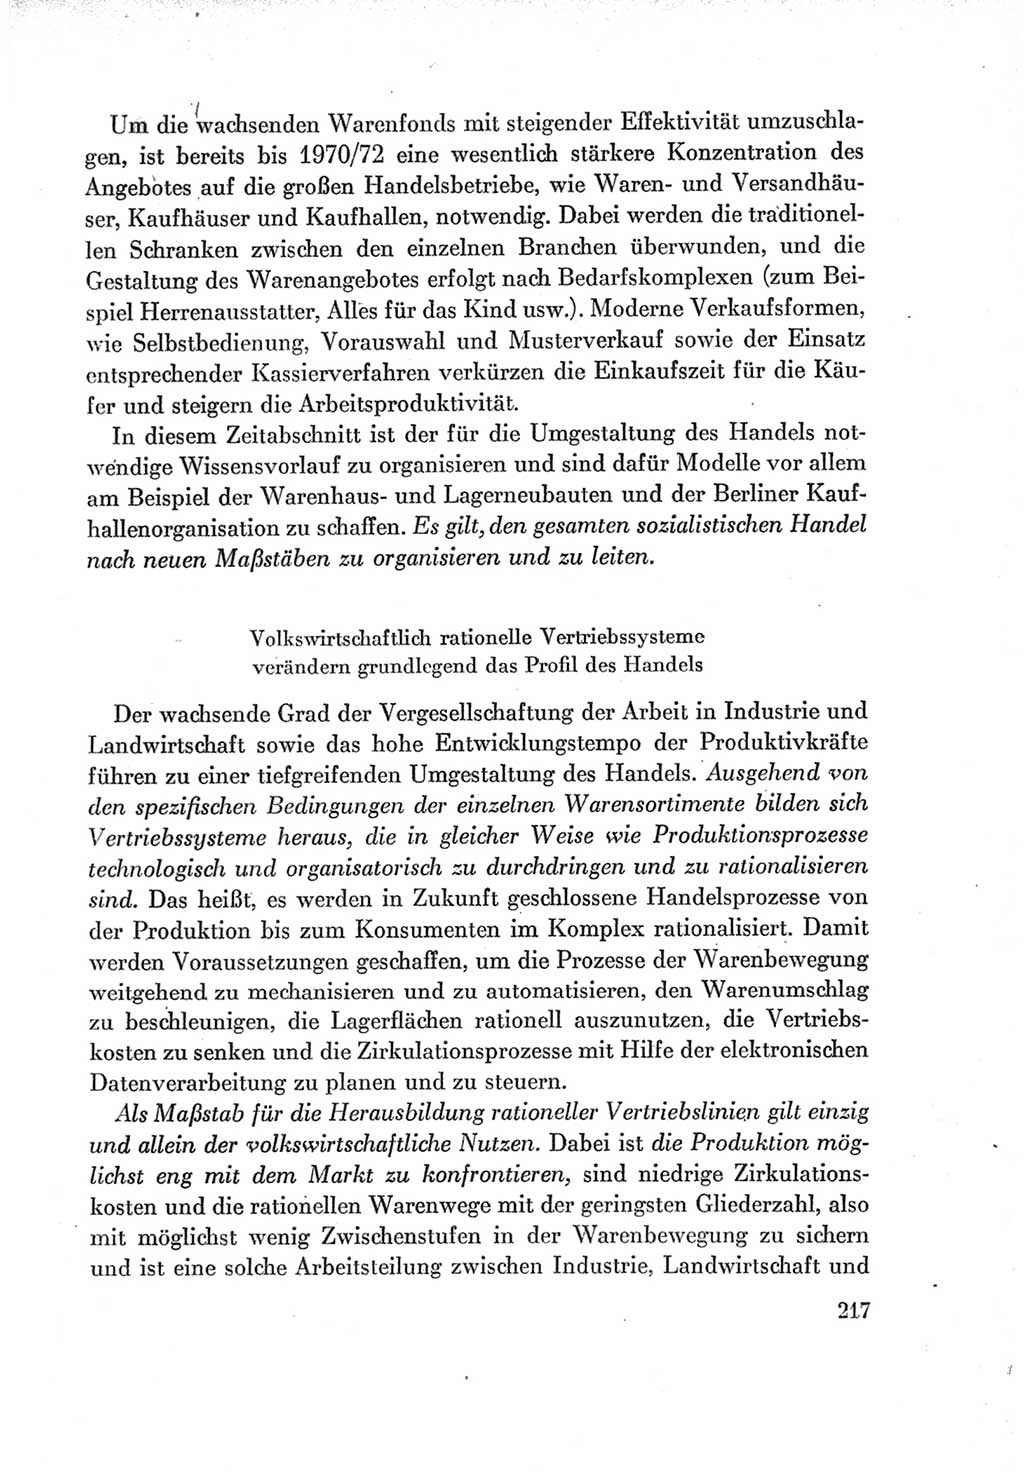 Protokoll der Verhandlungen des Ⅶ. Parteitages der Sozialistischen Einheitspartei Deutschlands (SED) [Deutsche Demokratische Republik (DDR)] 1967, Band Ⅰ, Seite 217 (Prot. Verh. Ⅶ. PT SED DDR 1967, Bd. Ⅰ, S. 217)